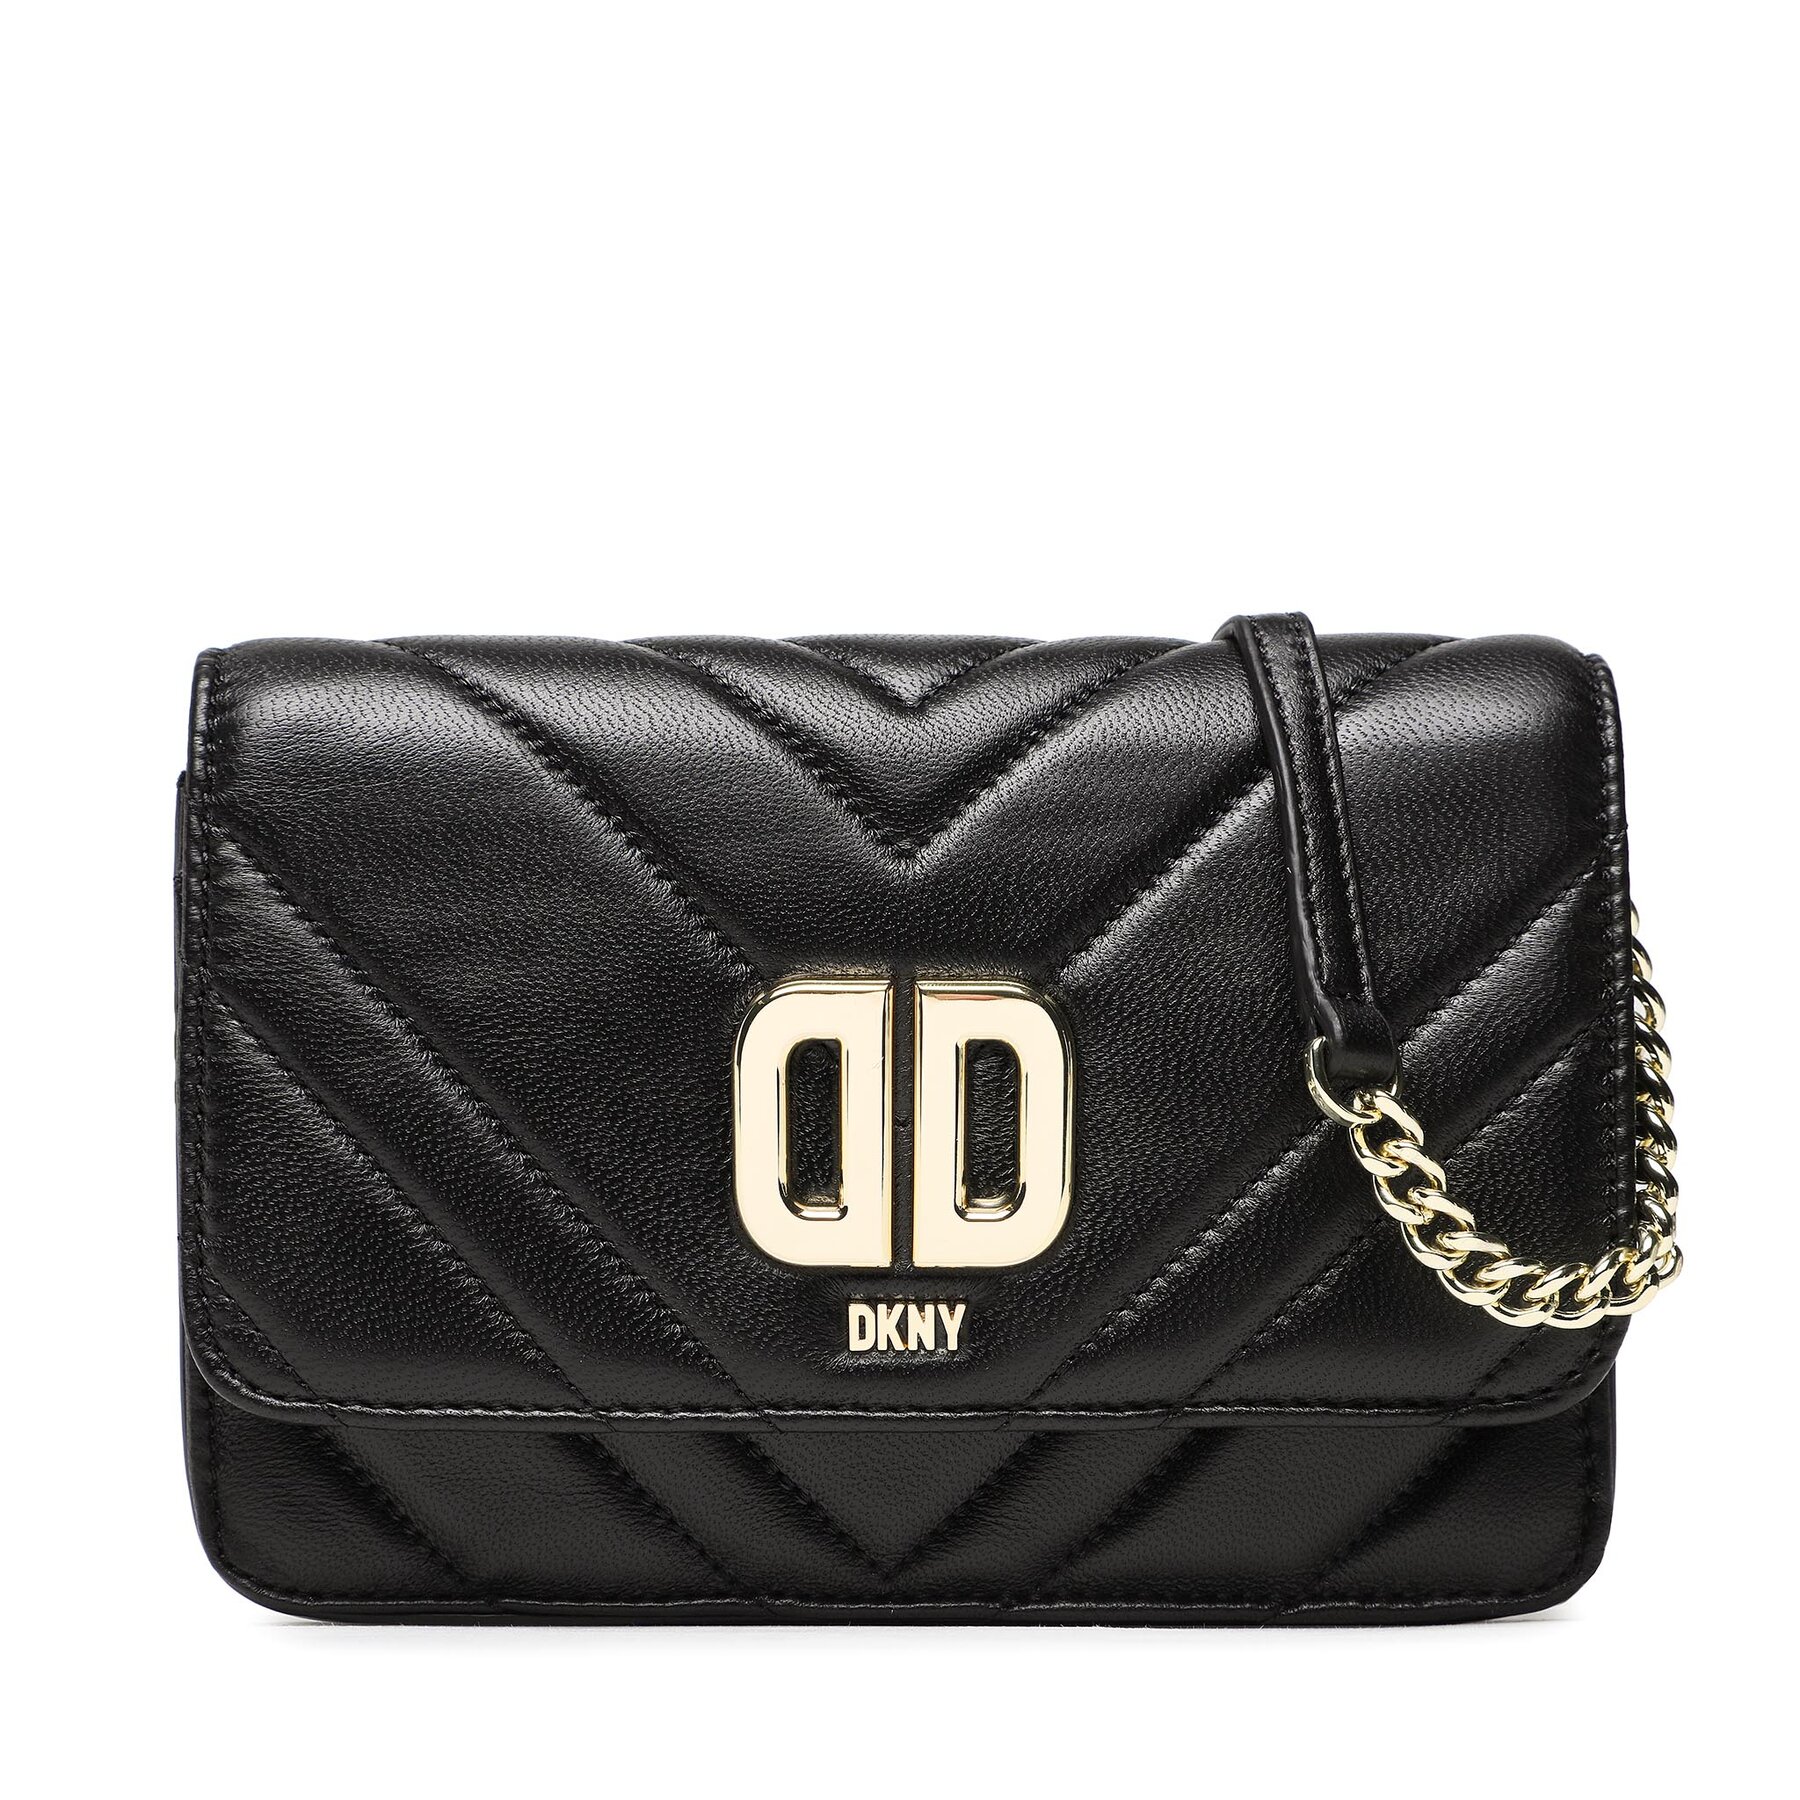 Handtasche DKNY Delphine Flp Cbody R23EBK74 Blk/Gold BDG von DKNY